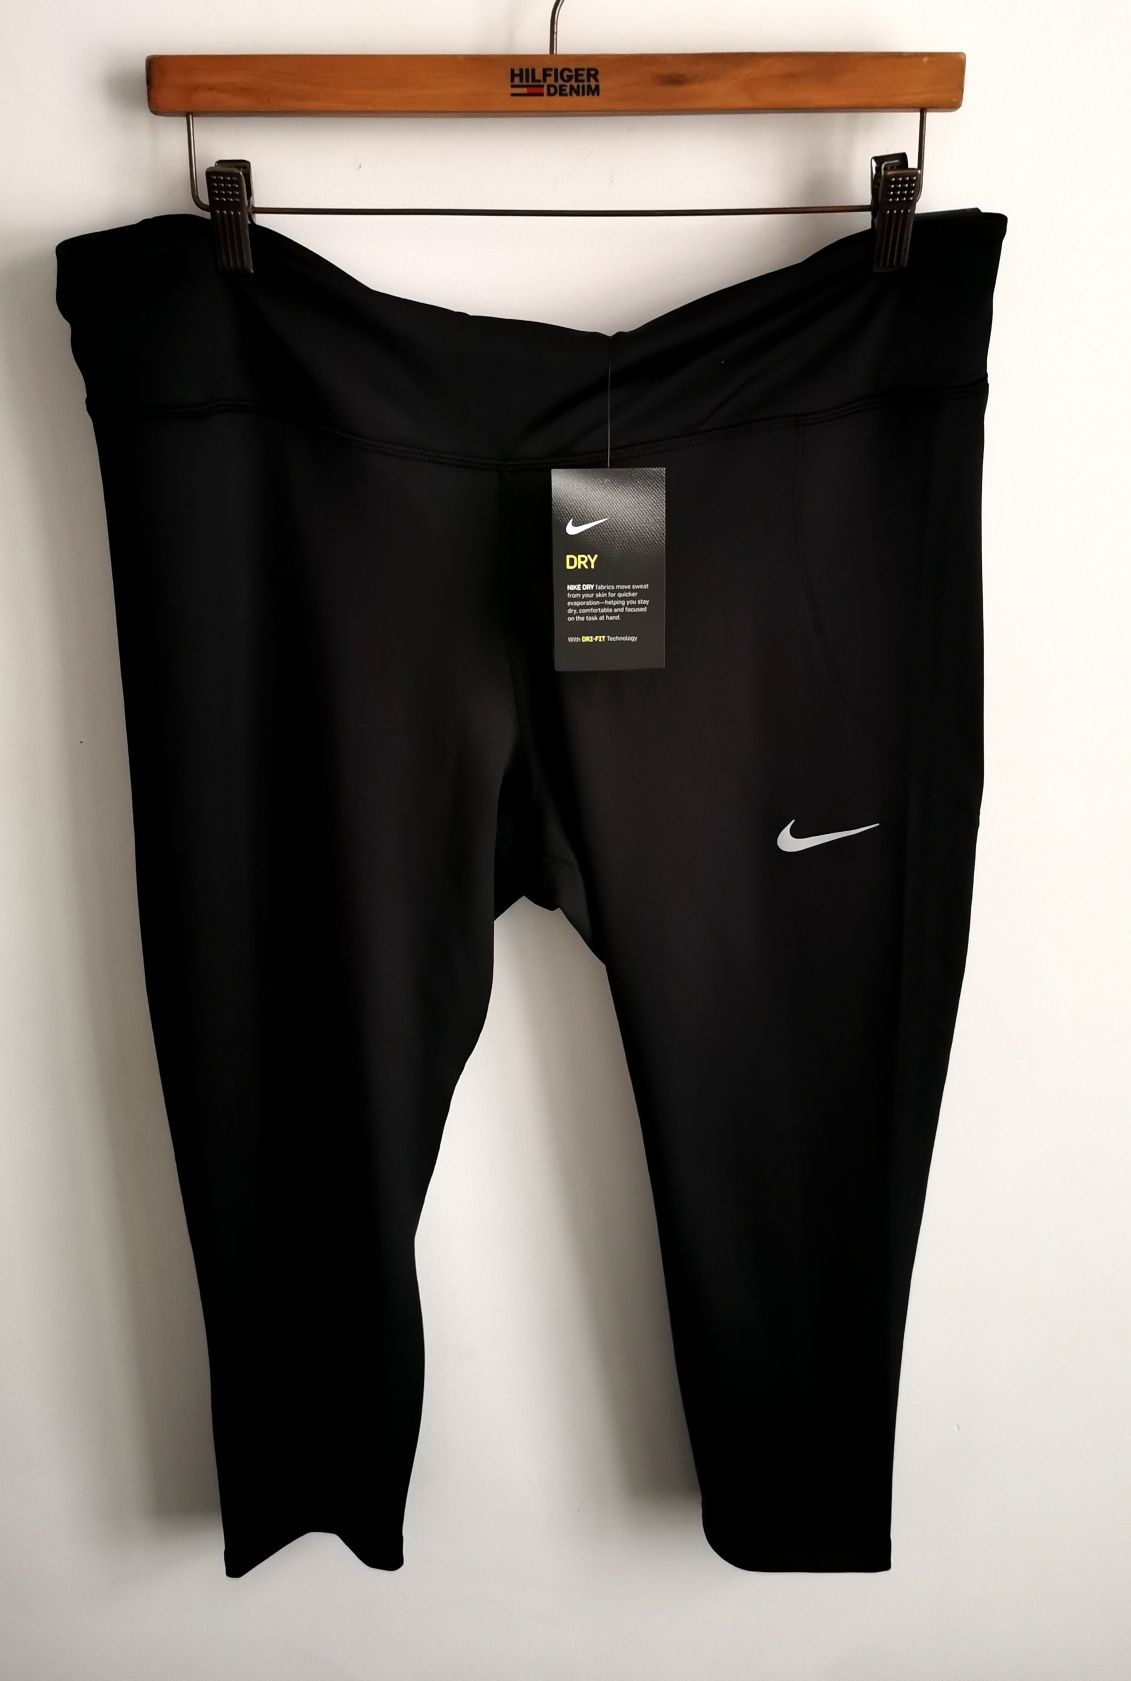 Nike legginsy sportowe damskie logowane wyższy stan NOWE XXL